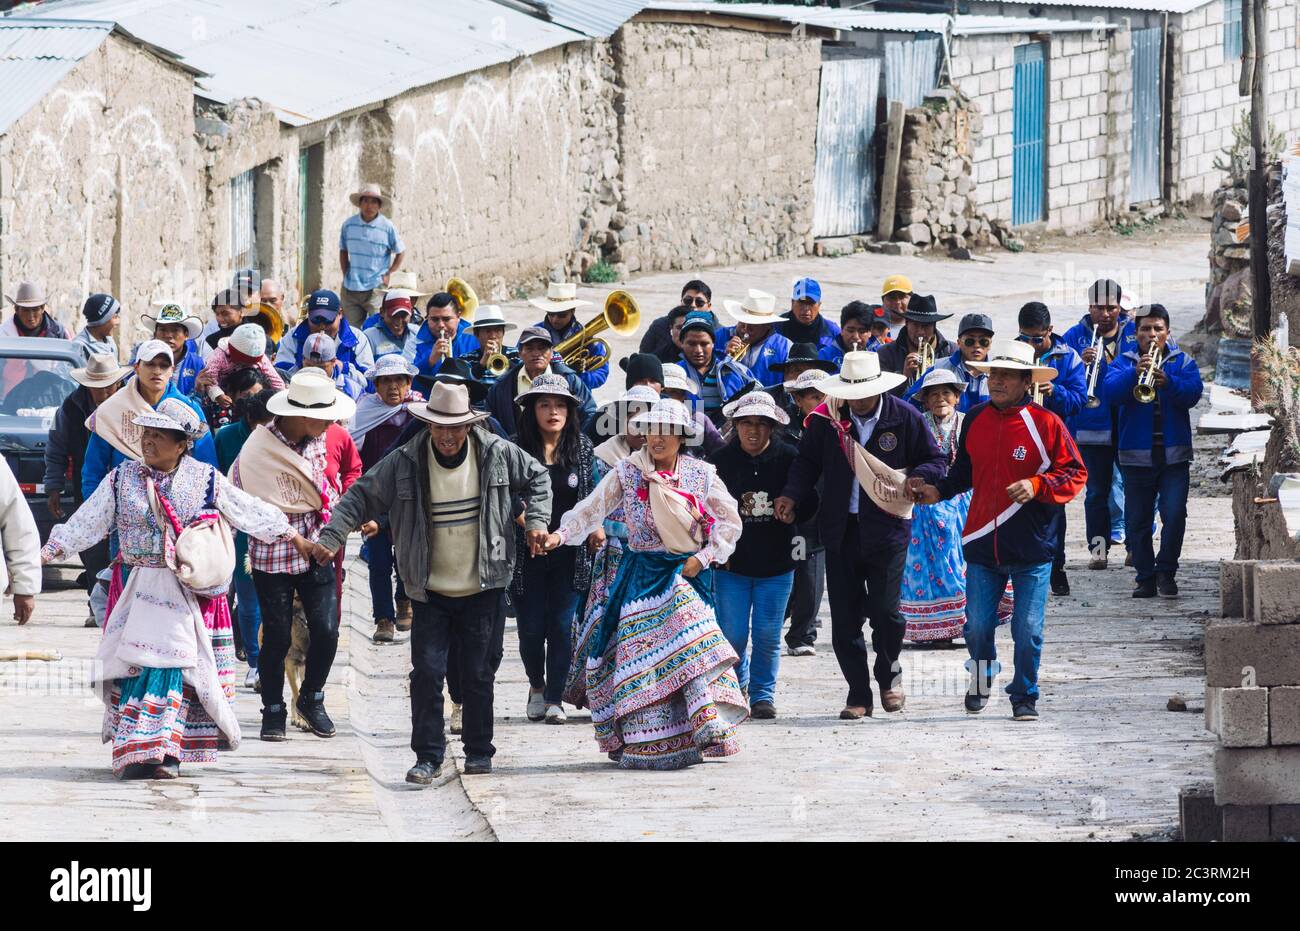 PINCHOLLO, VALLE DEL COLCA, PERÙ - 20 GENNAIO 2018: Gruppo di peruviani sfilano attraverso il piccolo villaggio di Pinchollo, Valle del Colca, Perù Foto Stock